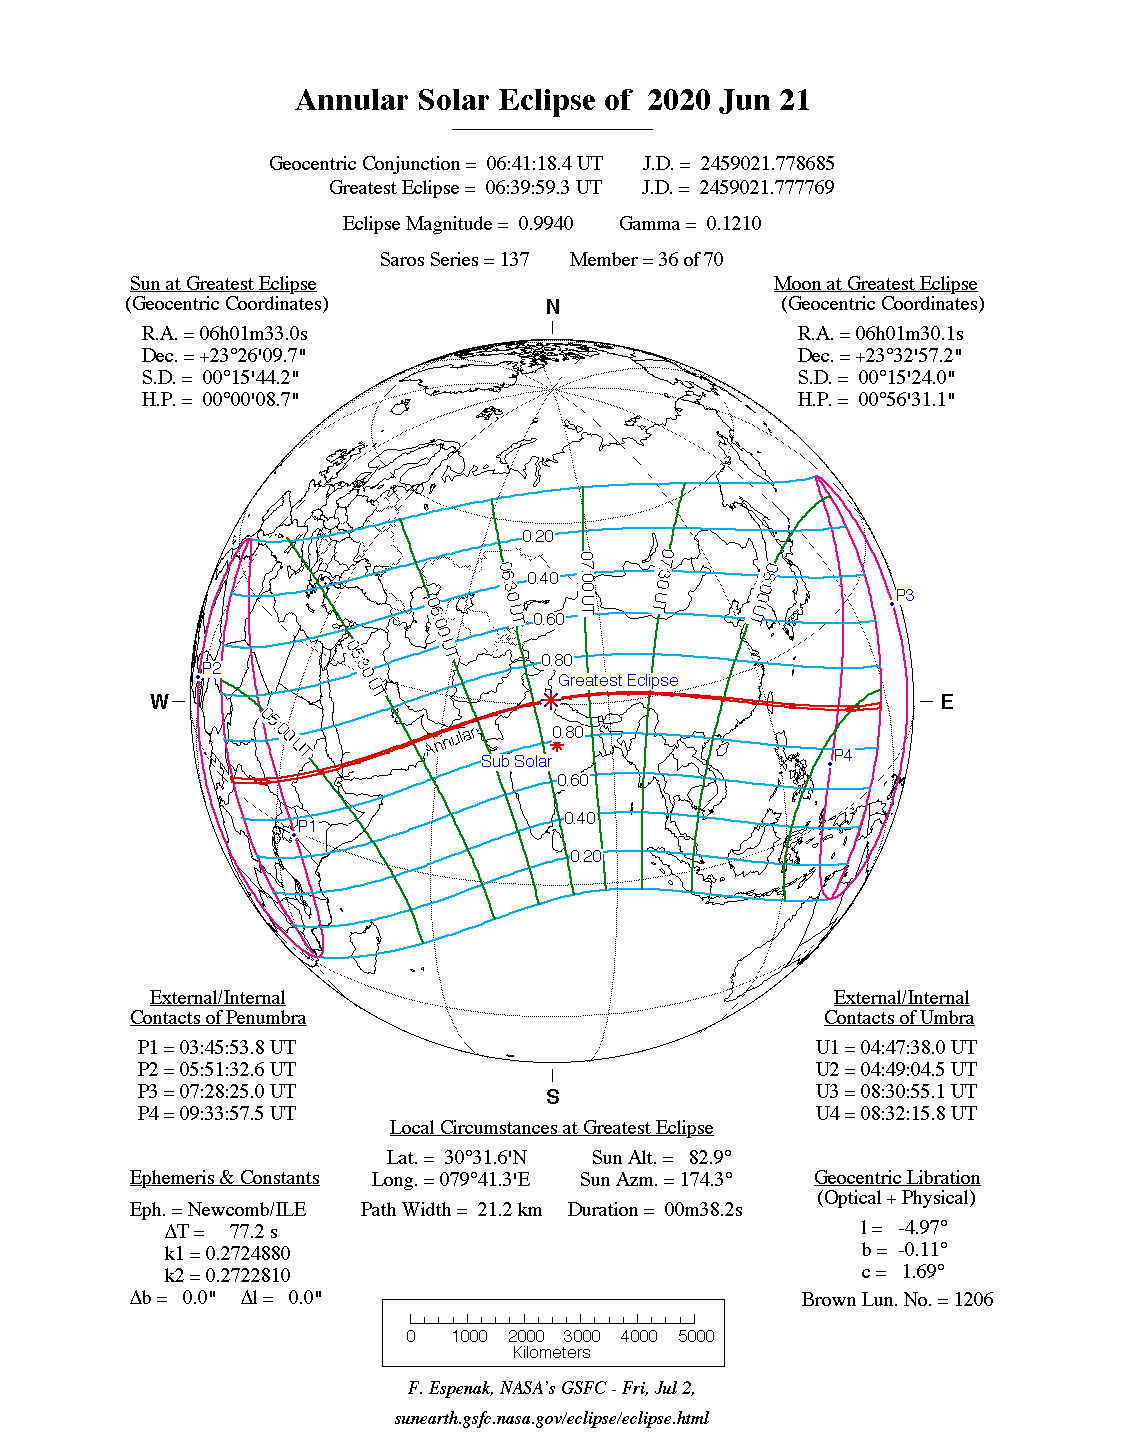 Verlauf der Ringförmigen Sonnenfinsternis am 21.06.2020